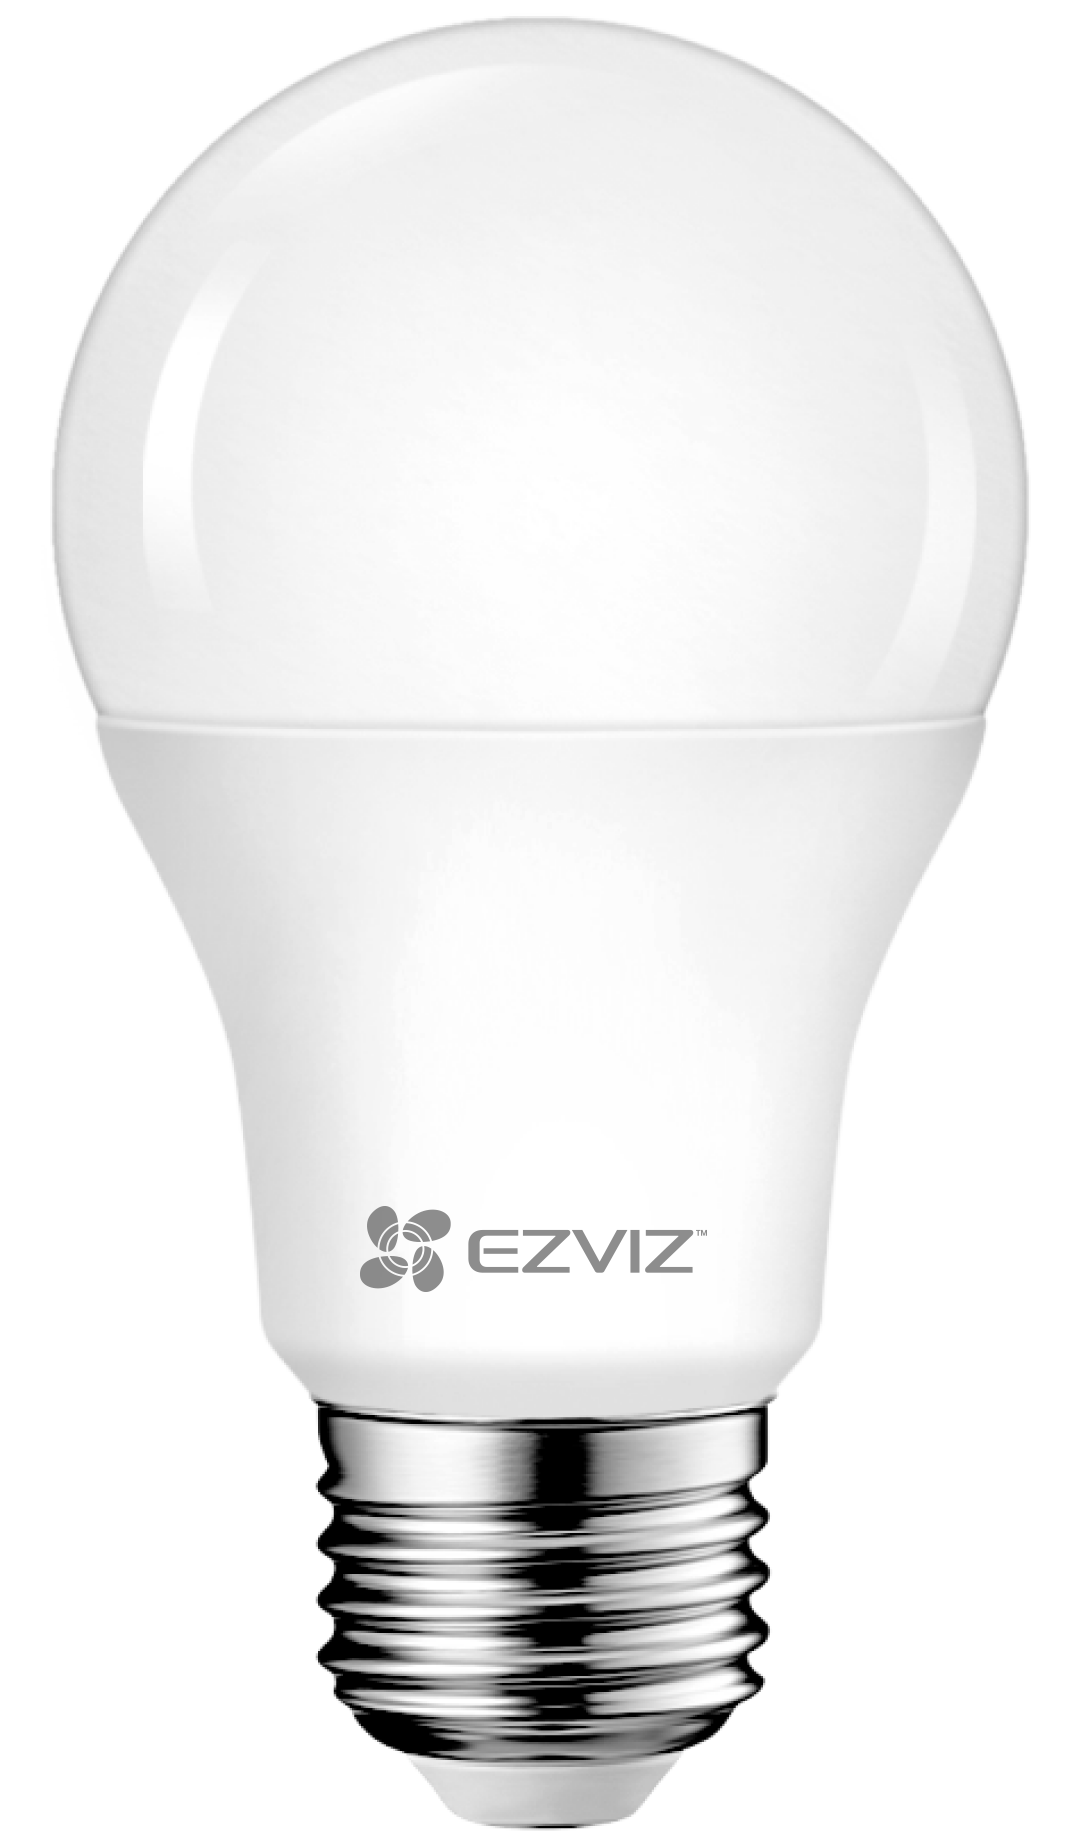 Bóng đèn thông minh Ezviz LB1 điều chỉnh độ sáng và nhiệt màu, Kết nối WI-FI, Điều Khiển Từ Xa Qua Ứng Dụng Di Động, Cài đặt lịch trình & hẹn giờ, Tiết kiệm năng lượng